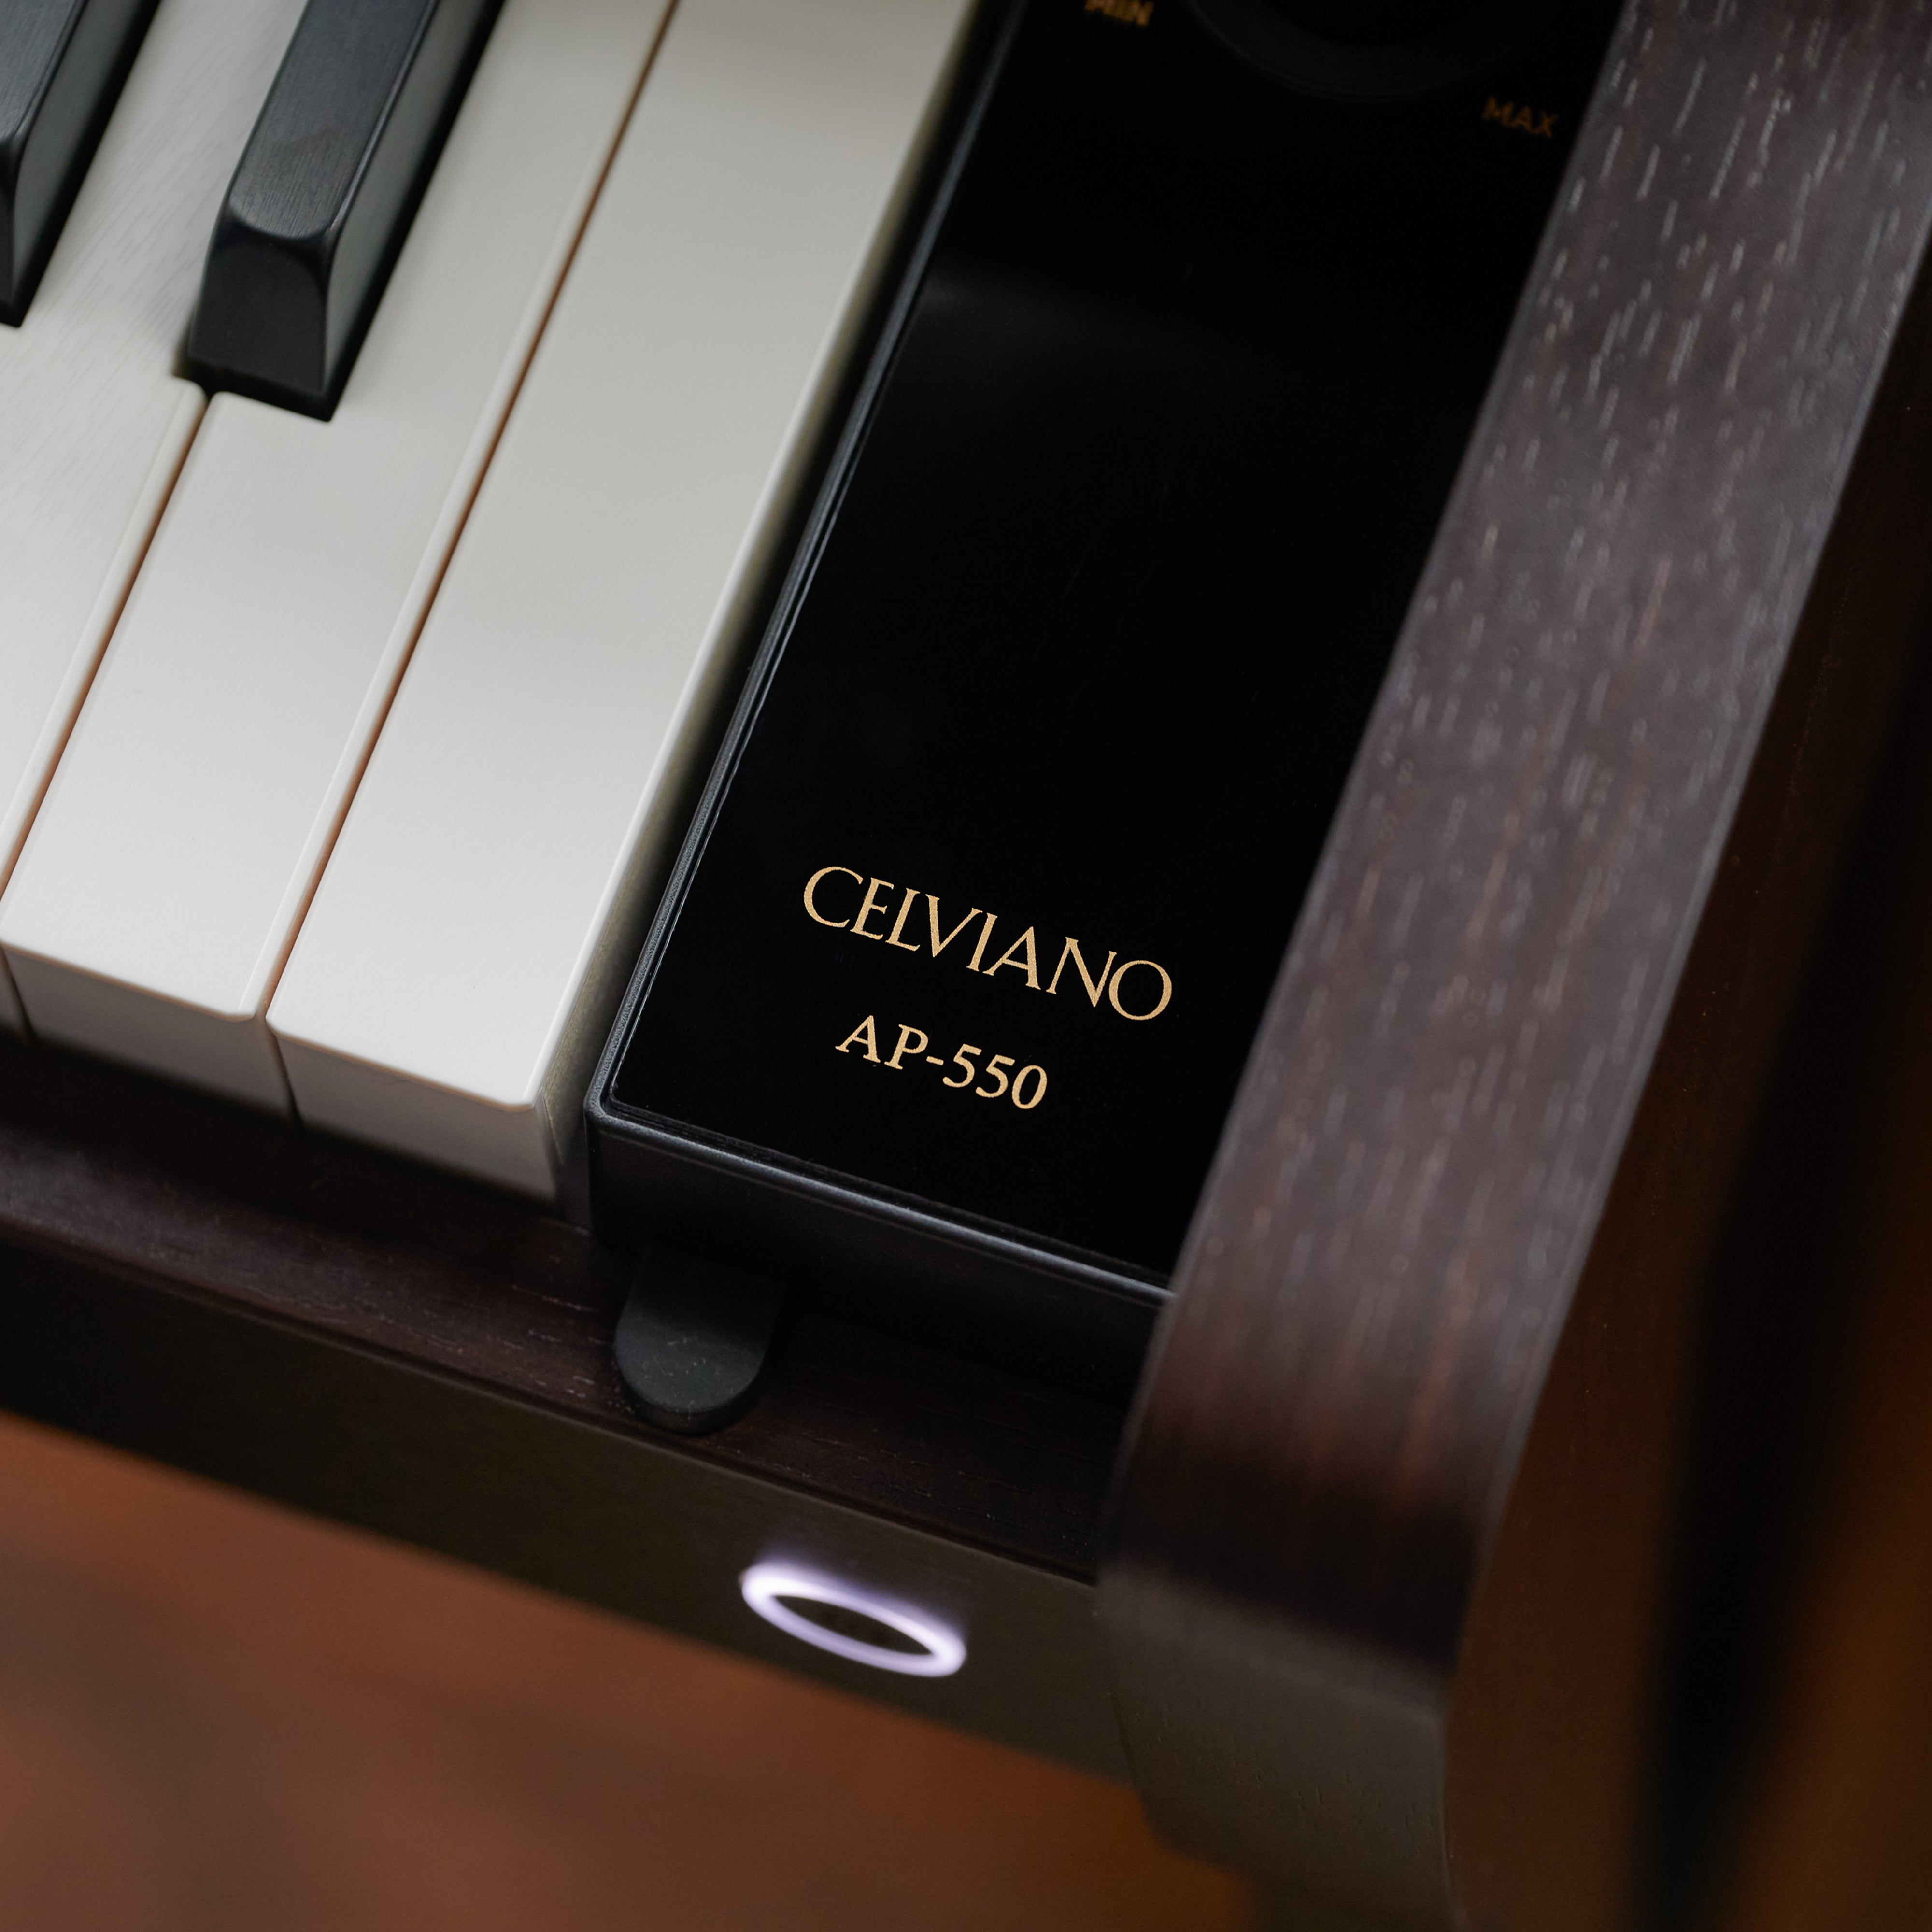 Casio Celviano AP-550 Digital Piano - Rosewood